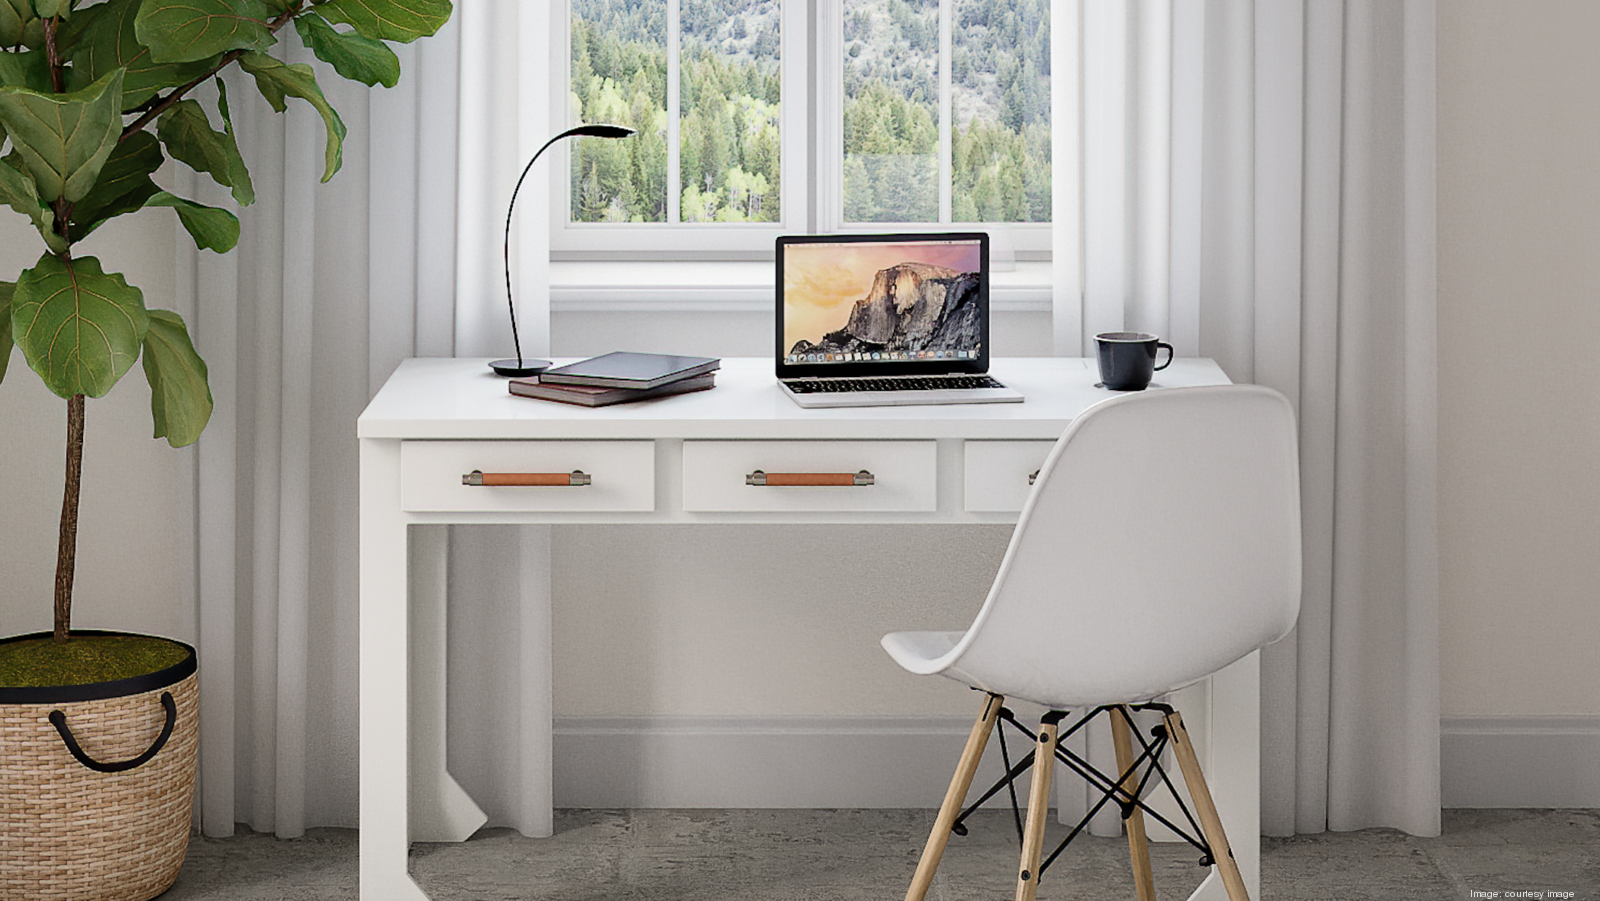 Atlanta Inno - How Atlanta startup herdesk designed an office desk for women